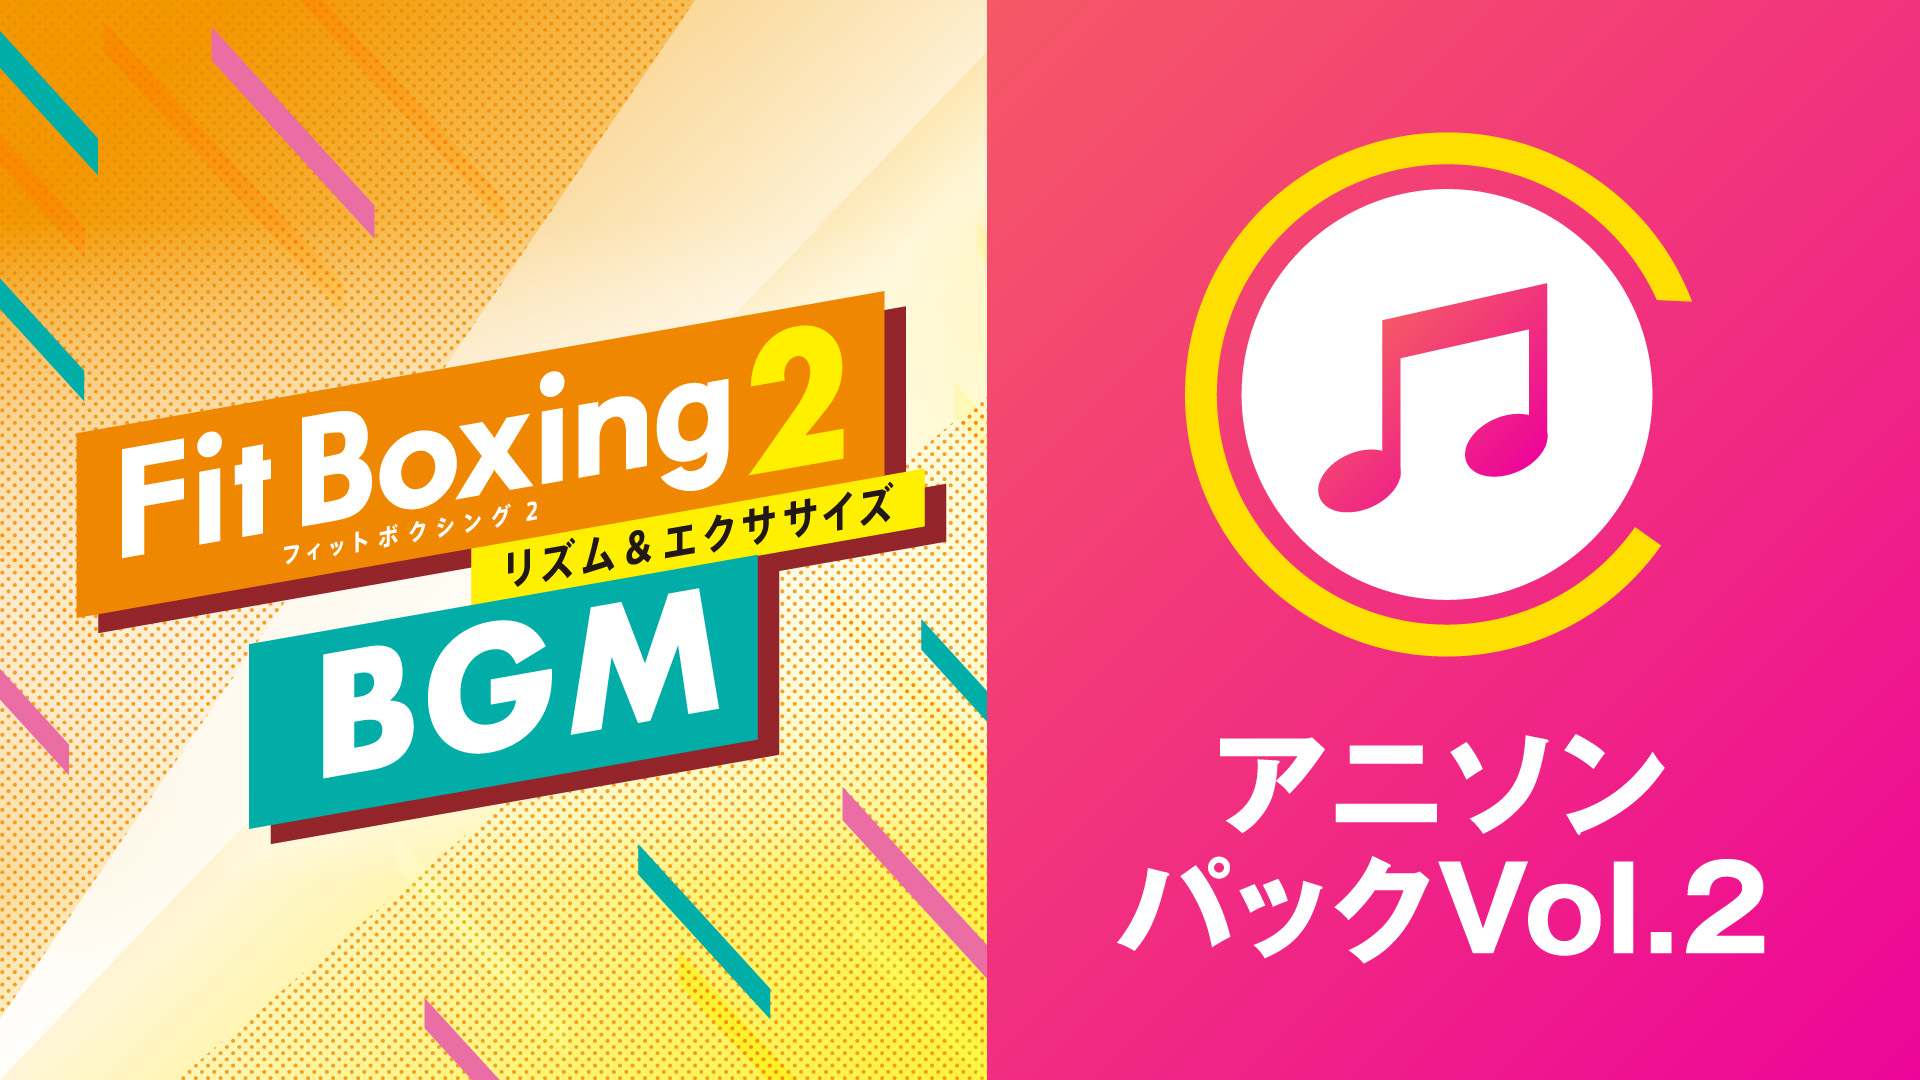 Fit Boxing2 BGM アニソンパックVol.2 2